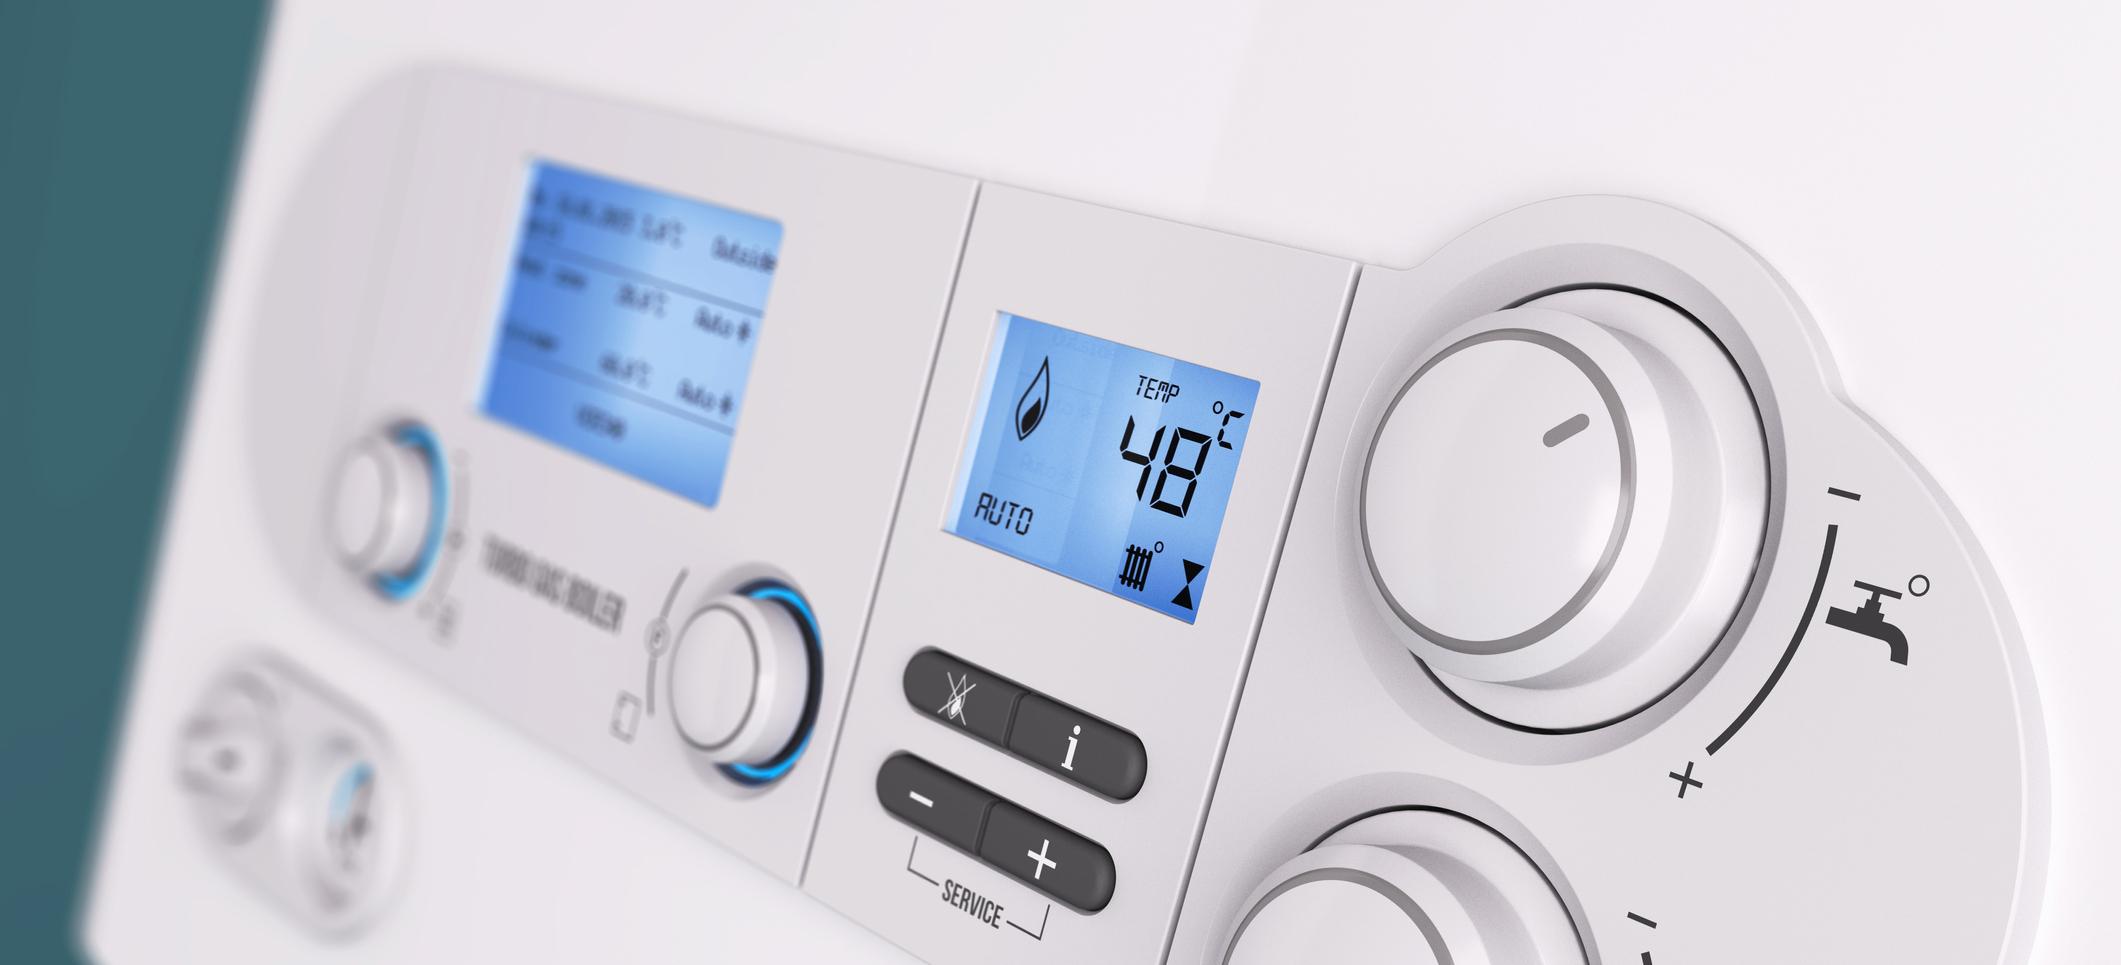 ¿Cuál es la diferencia entre calentador y caldera?